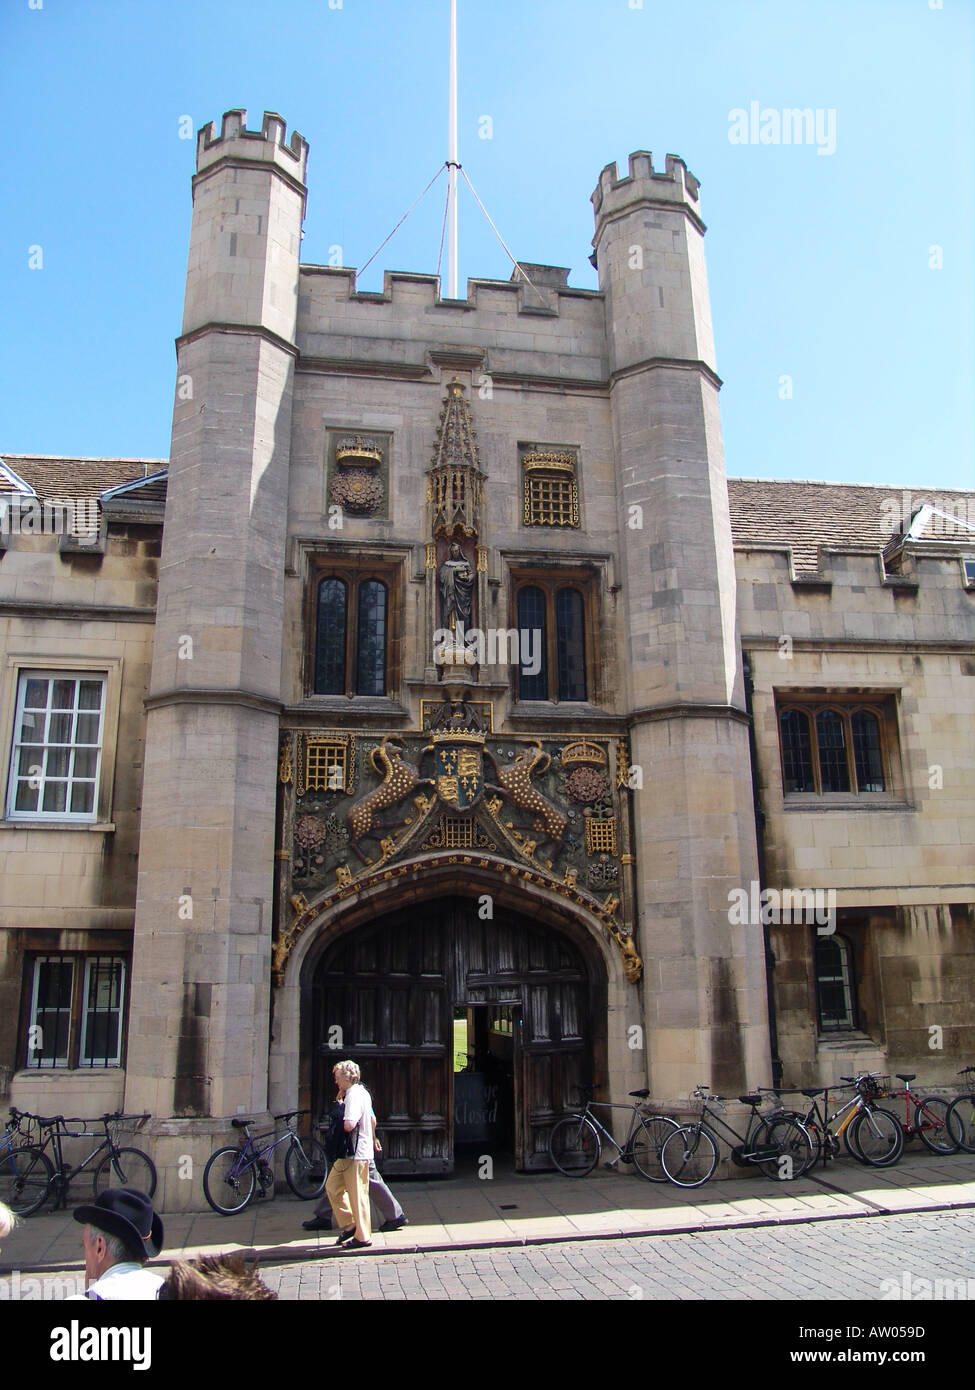 Christ's College Cambridge University Stock Photo